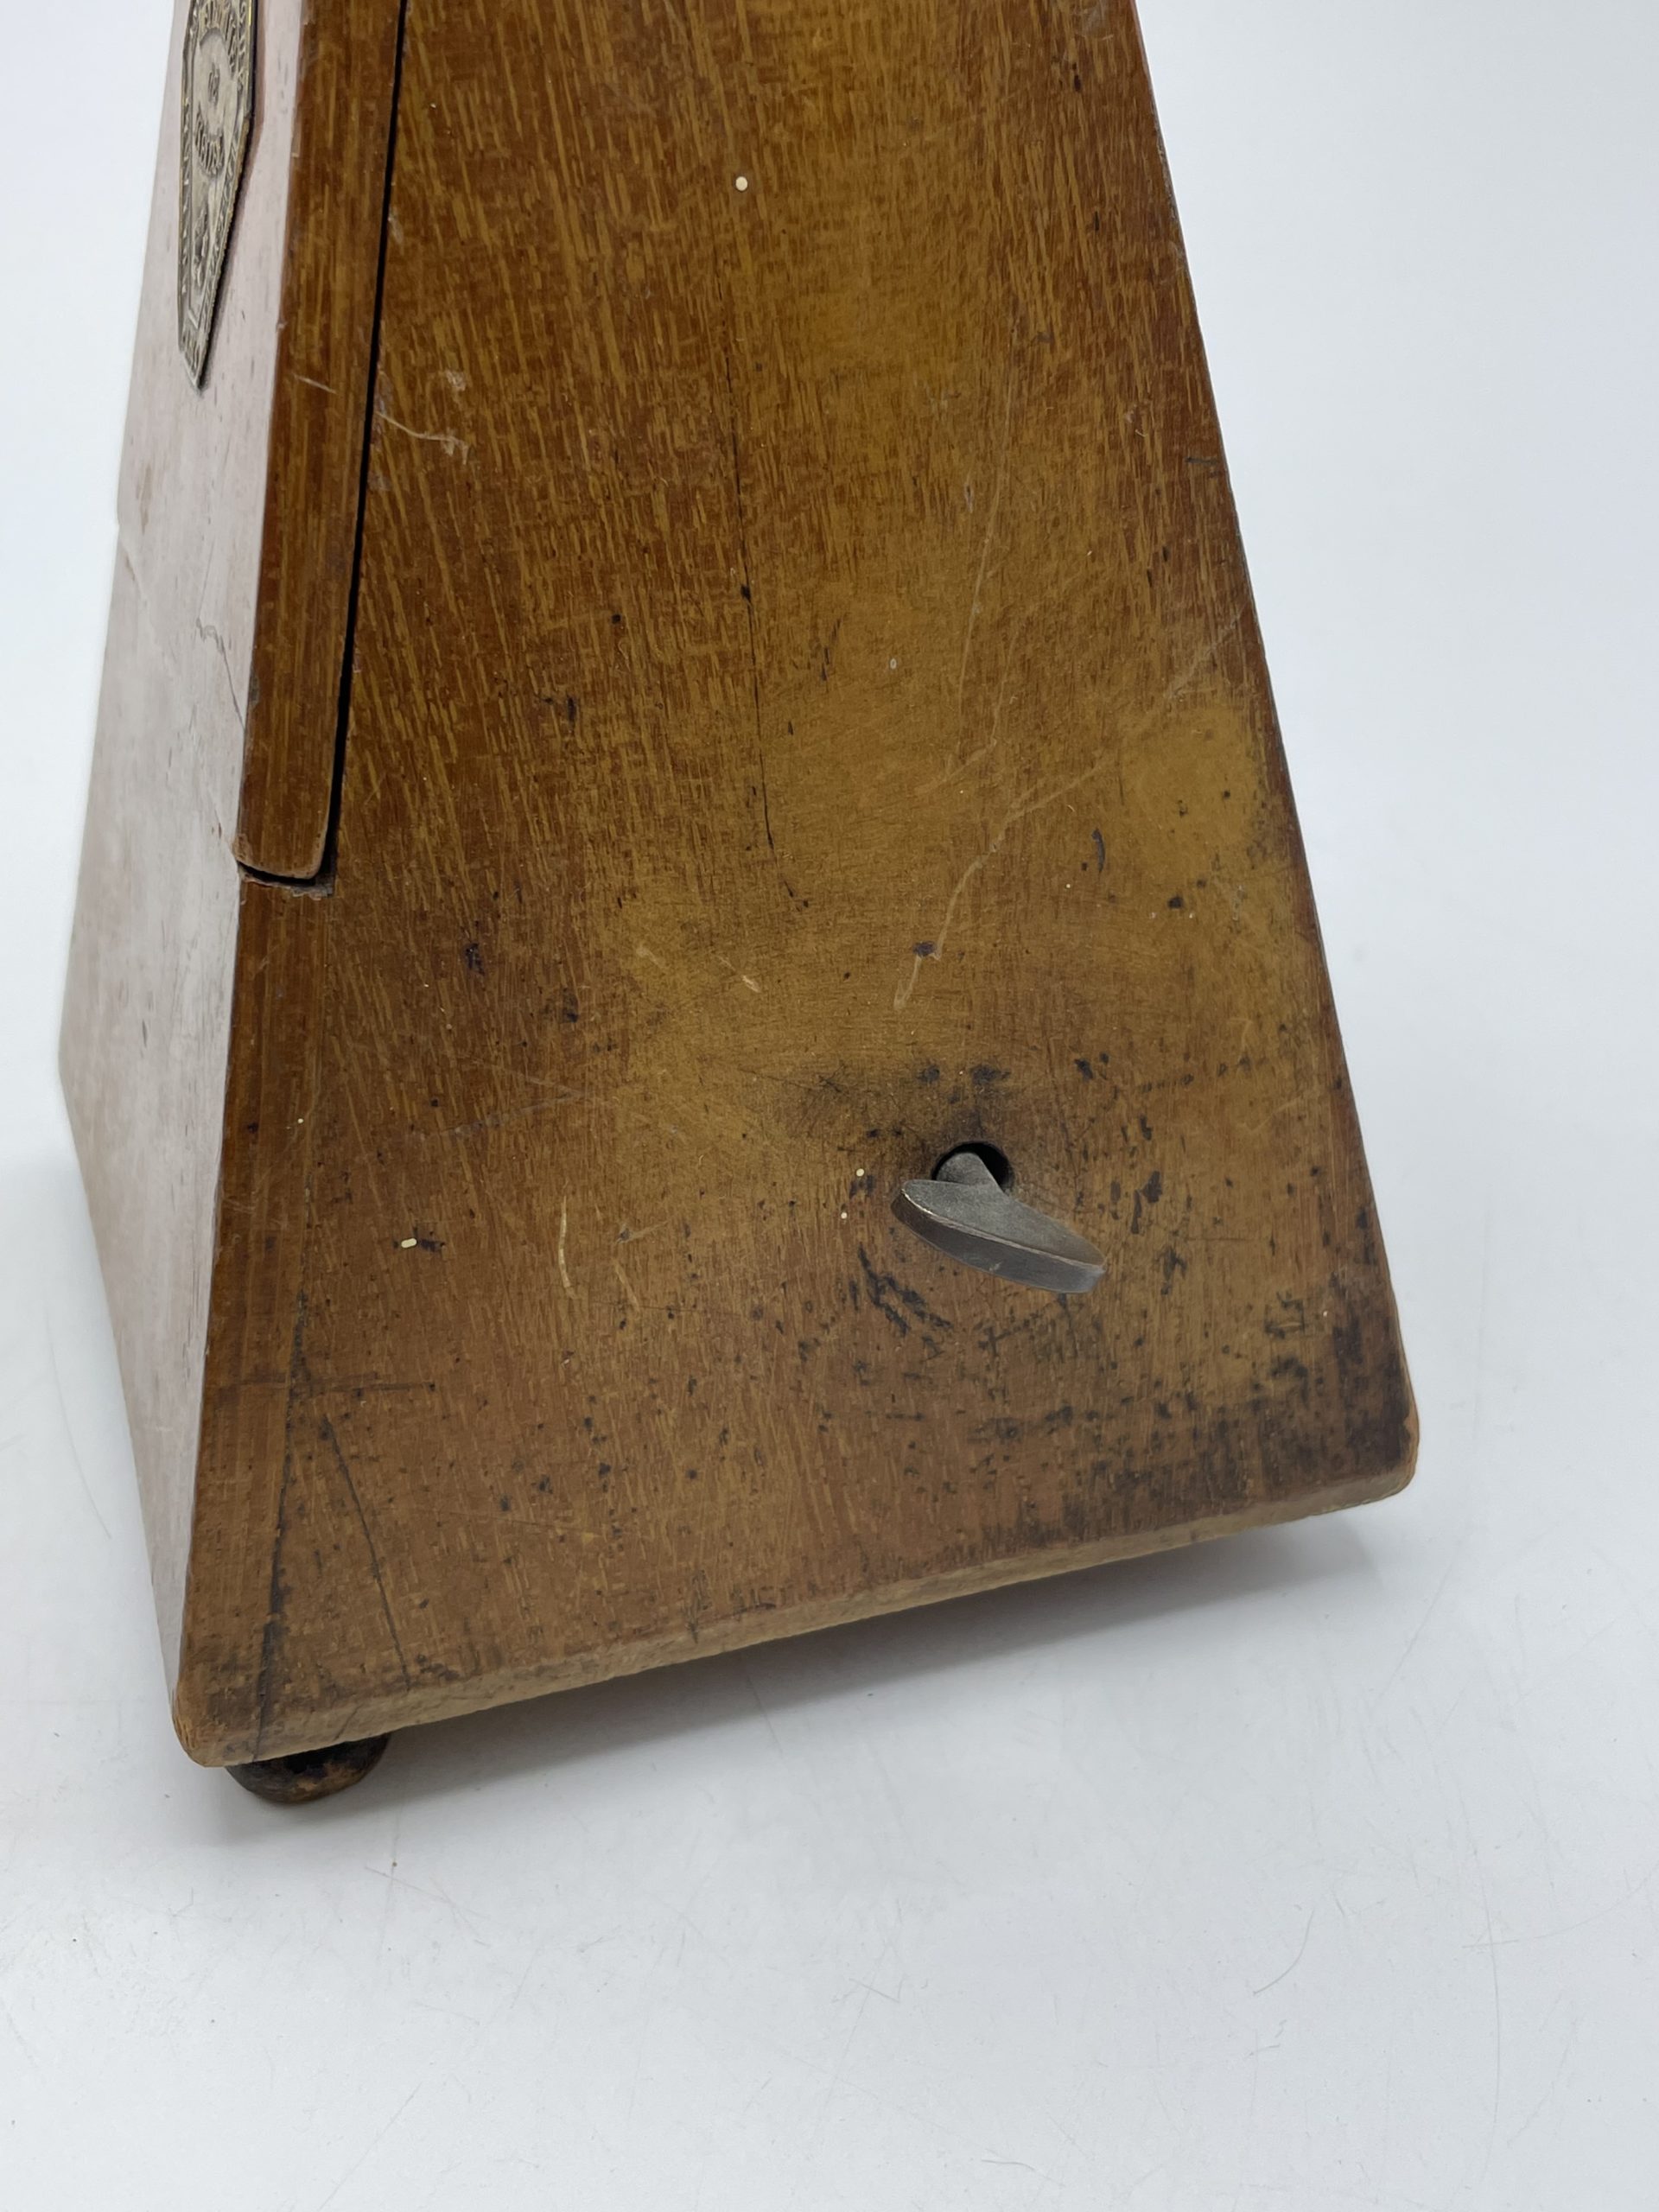 Métronome mécanique vintage en bois, métronome mécanique